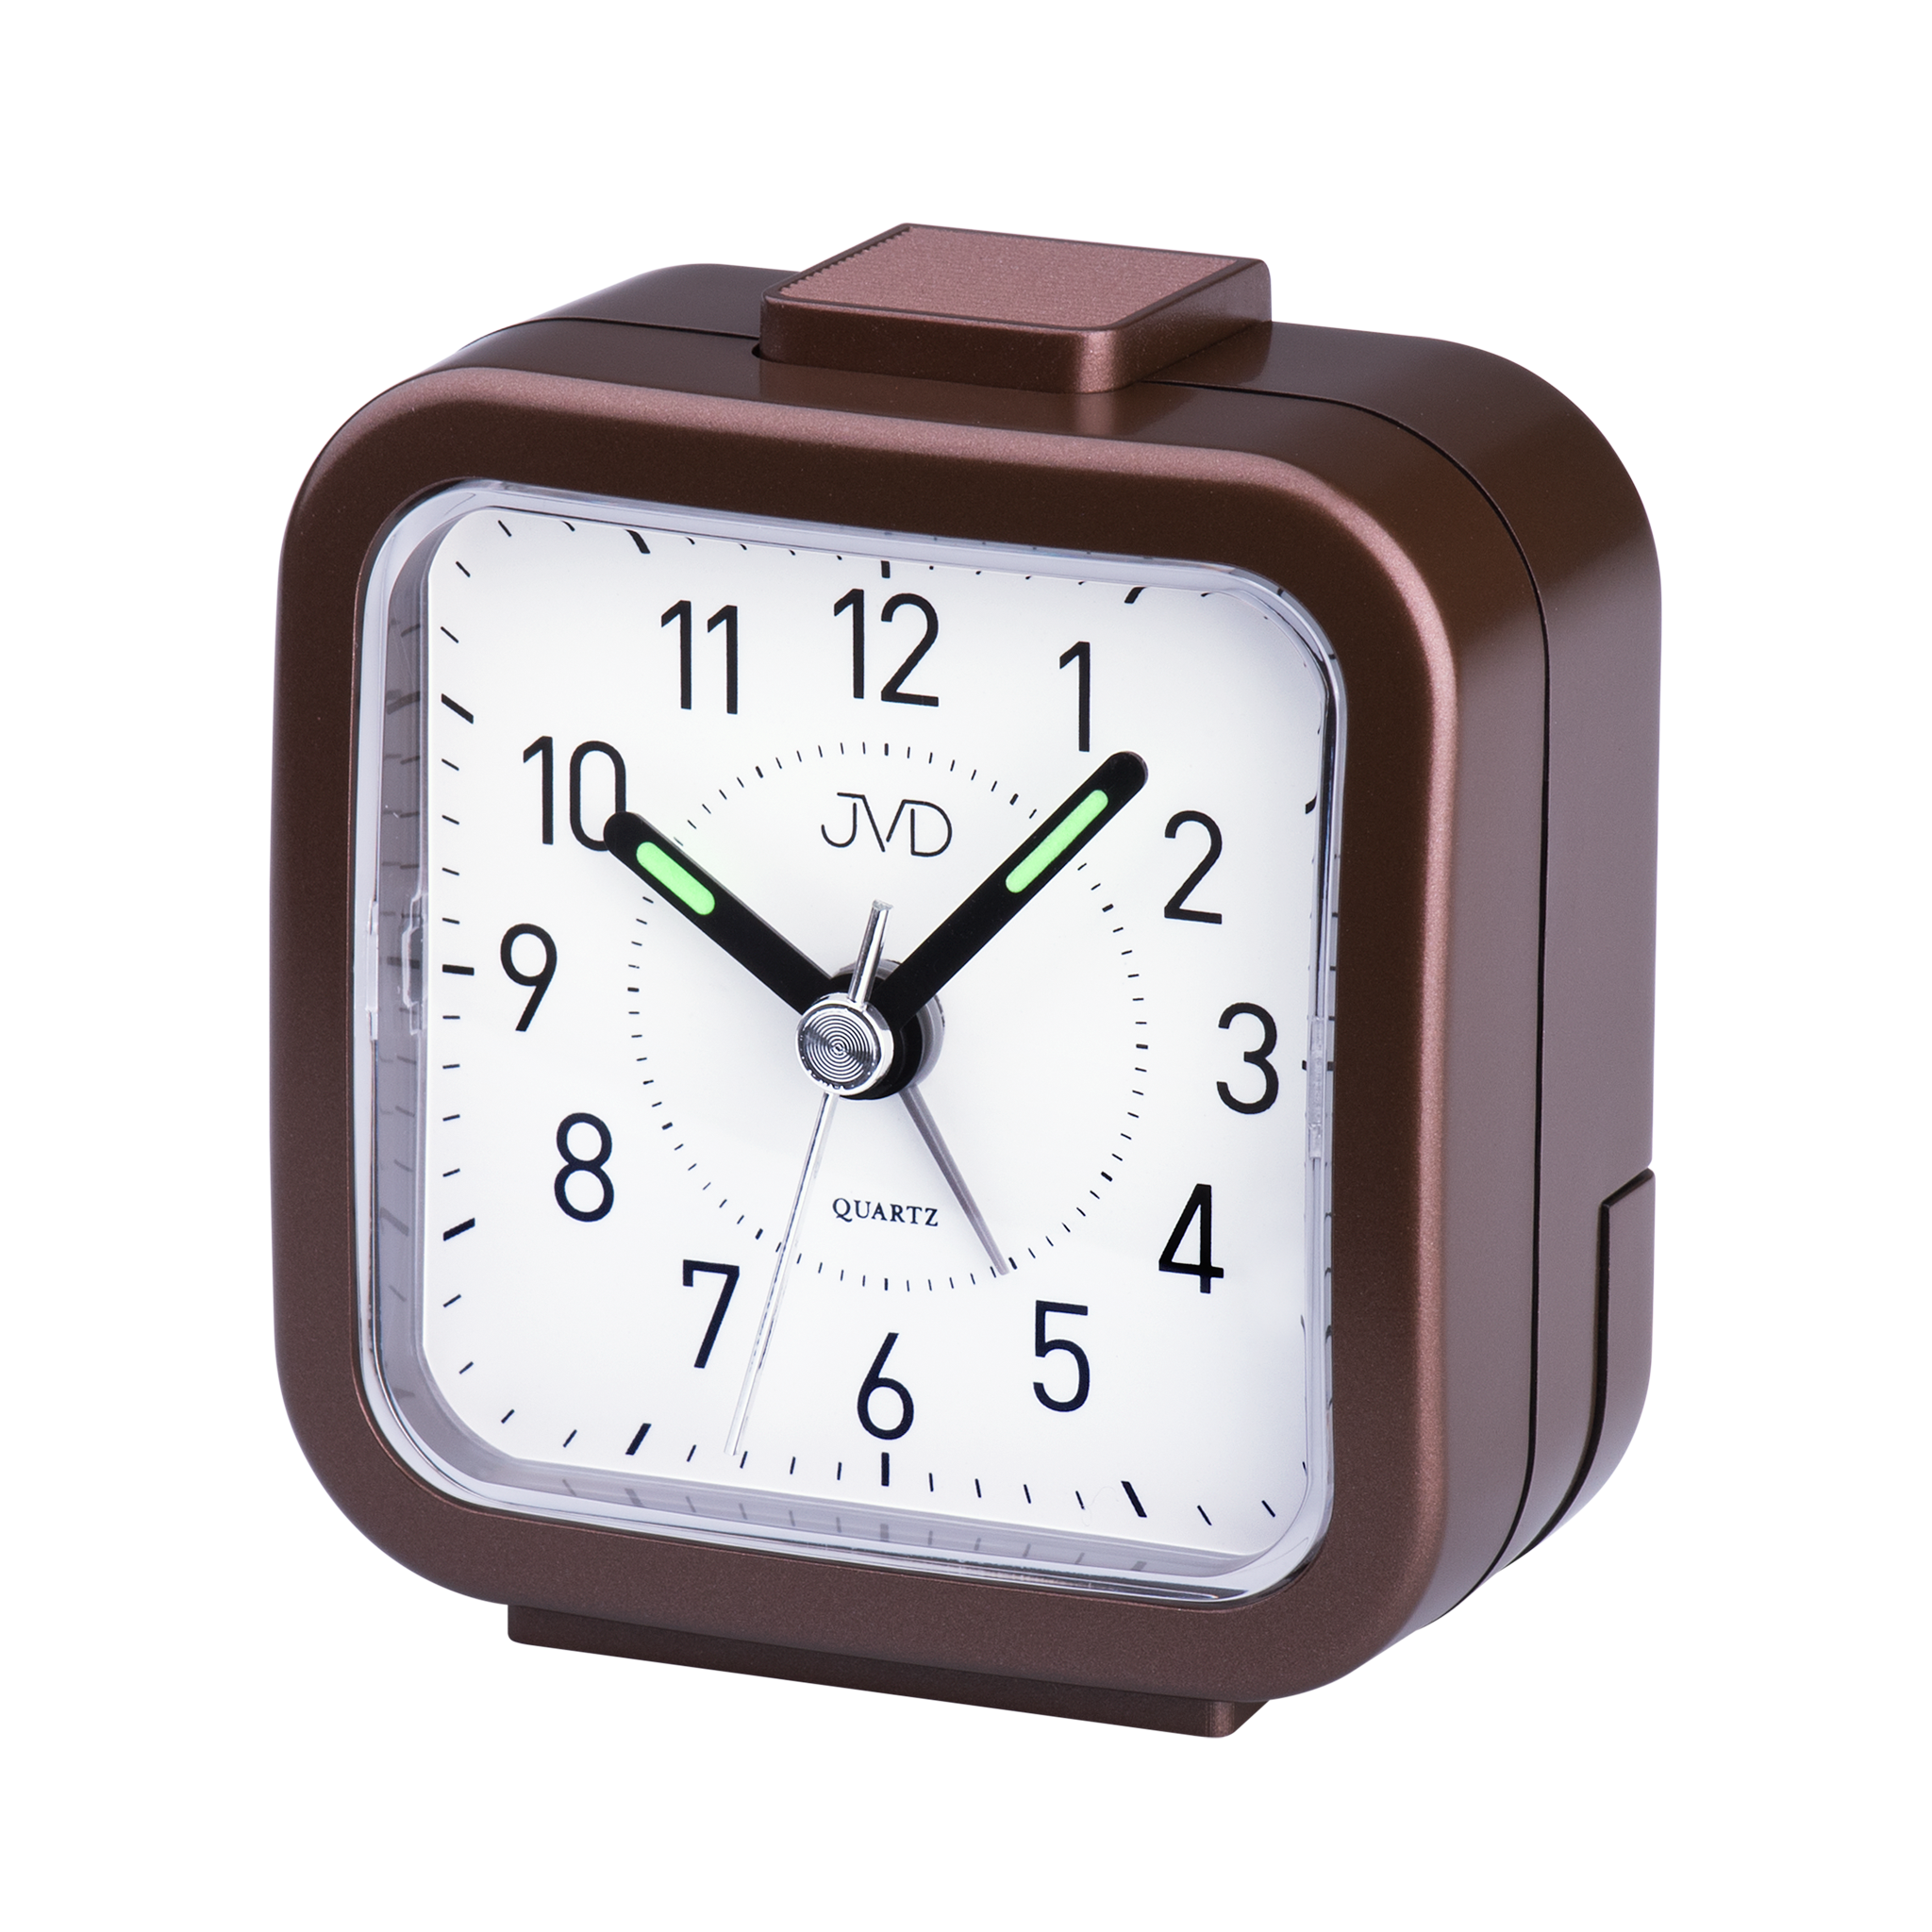 Часы аларм. Будильник Аларм клок. Quartz Alarm часы будильник. Часы-будильник 8029 кварцевые. Квадратные часы детские.